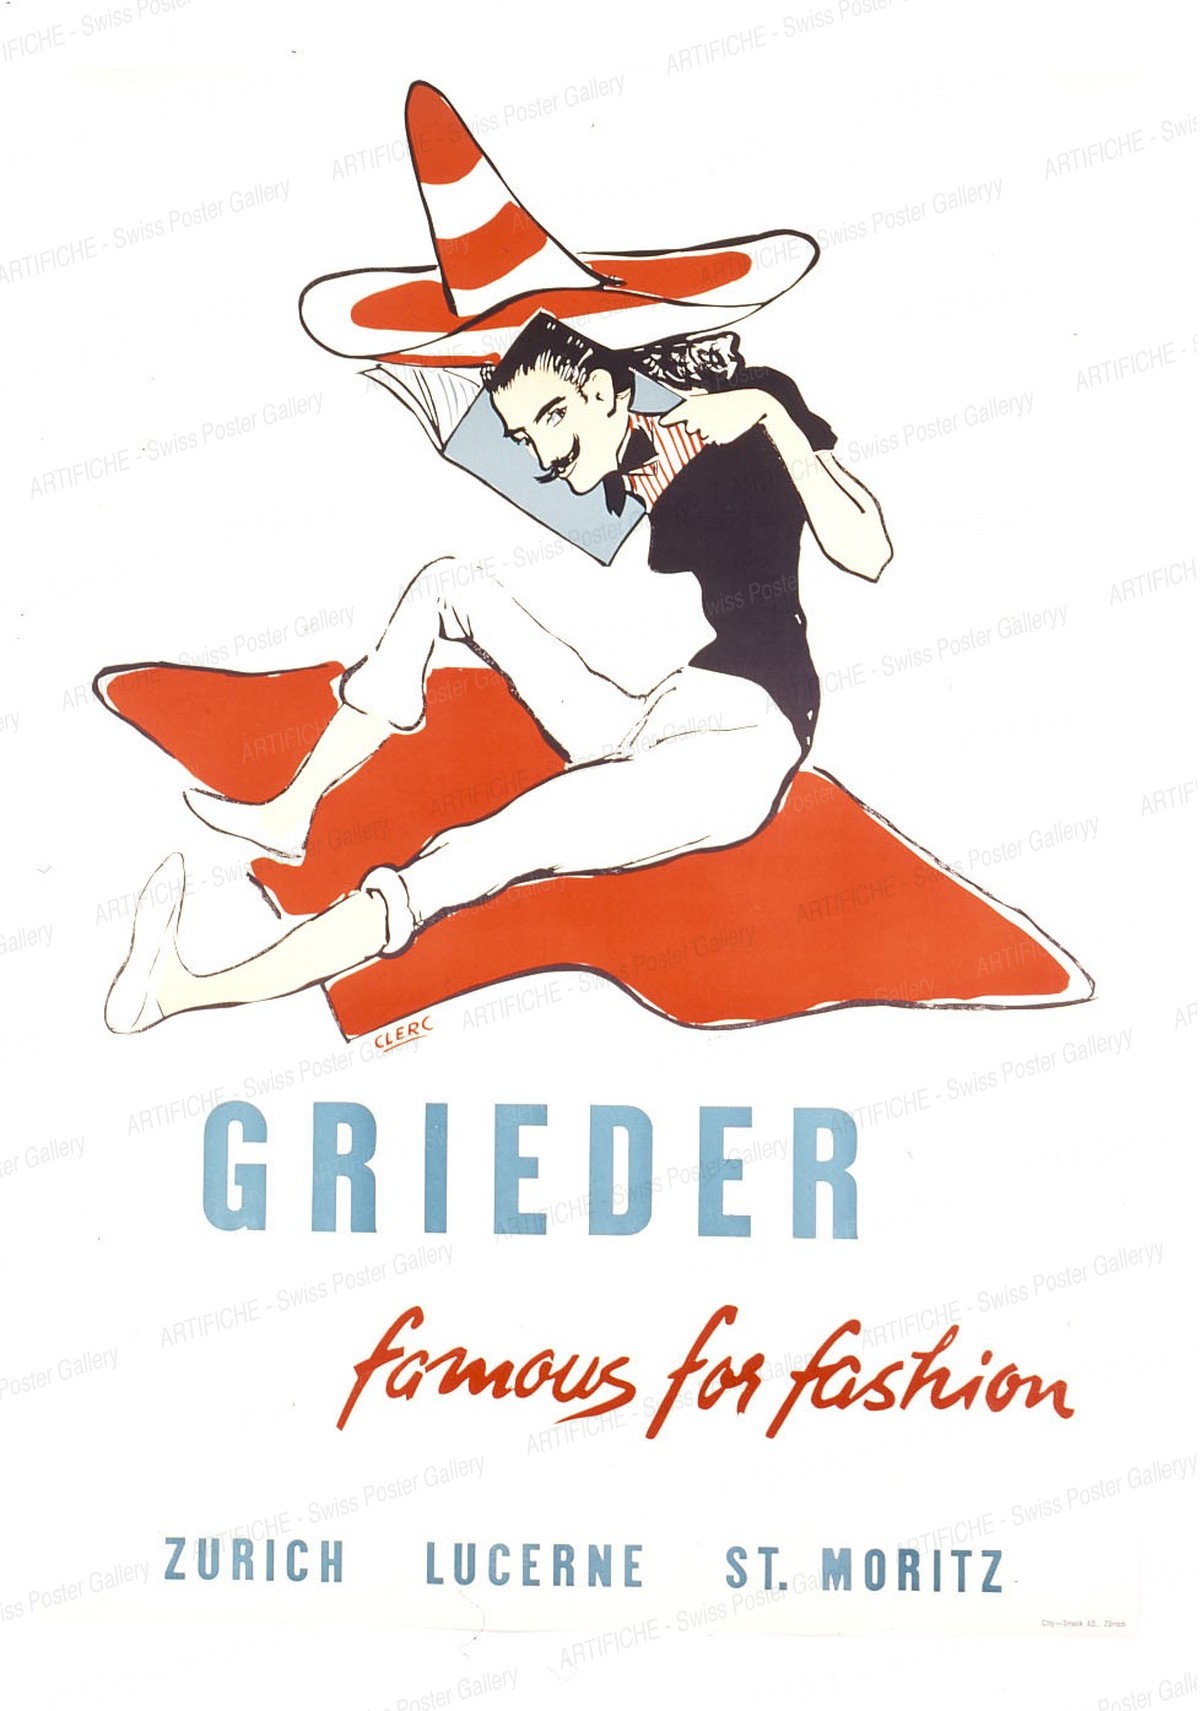 GRIEDER – famous for fashion – ZURICH LUCERNE ST. MORITZ, Clerc